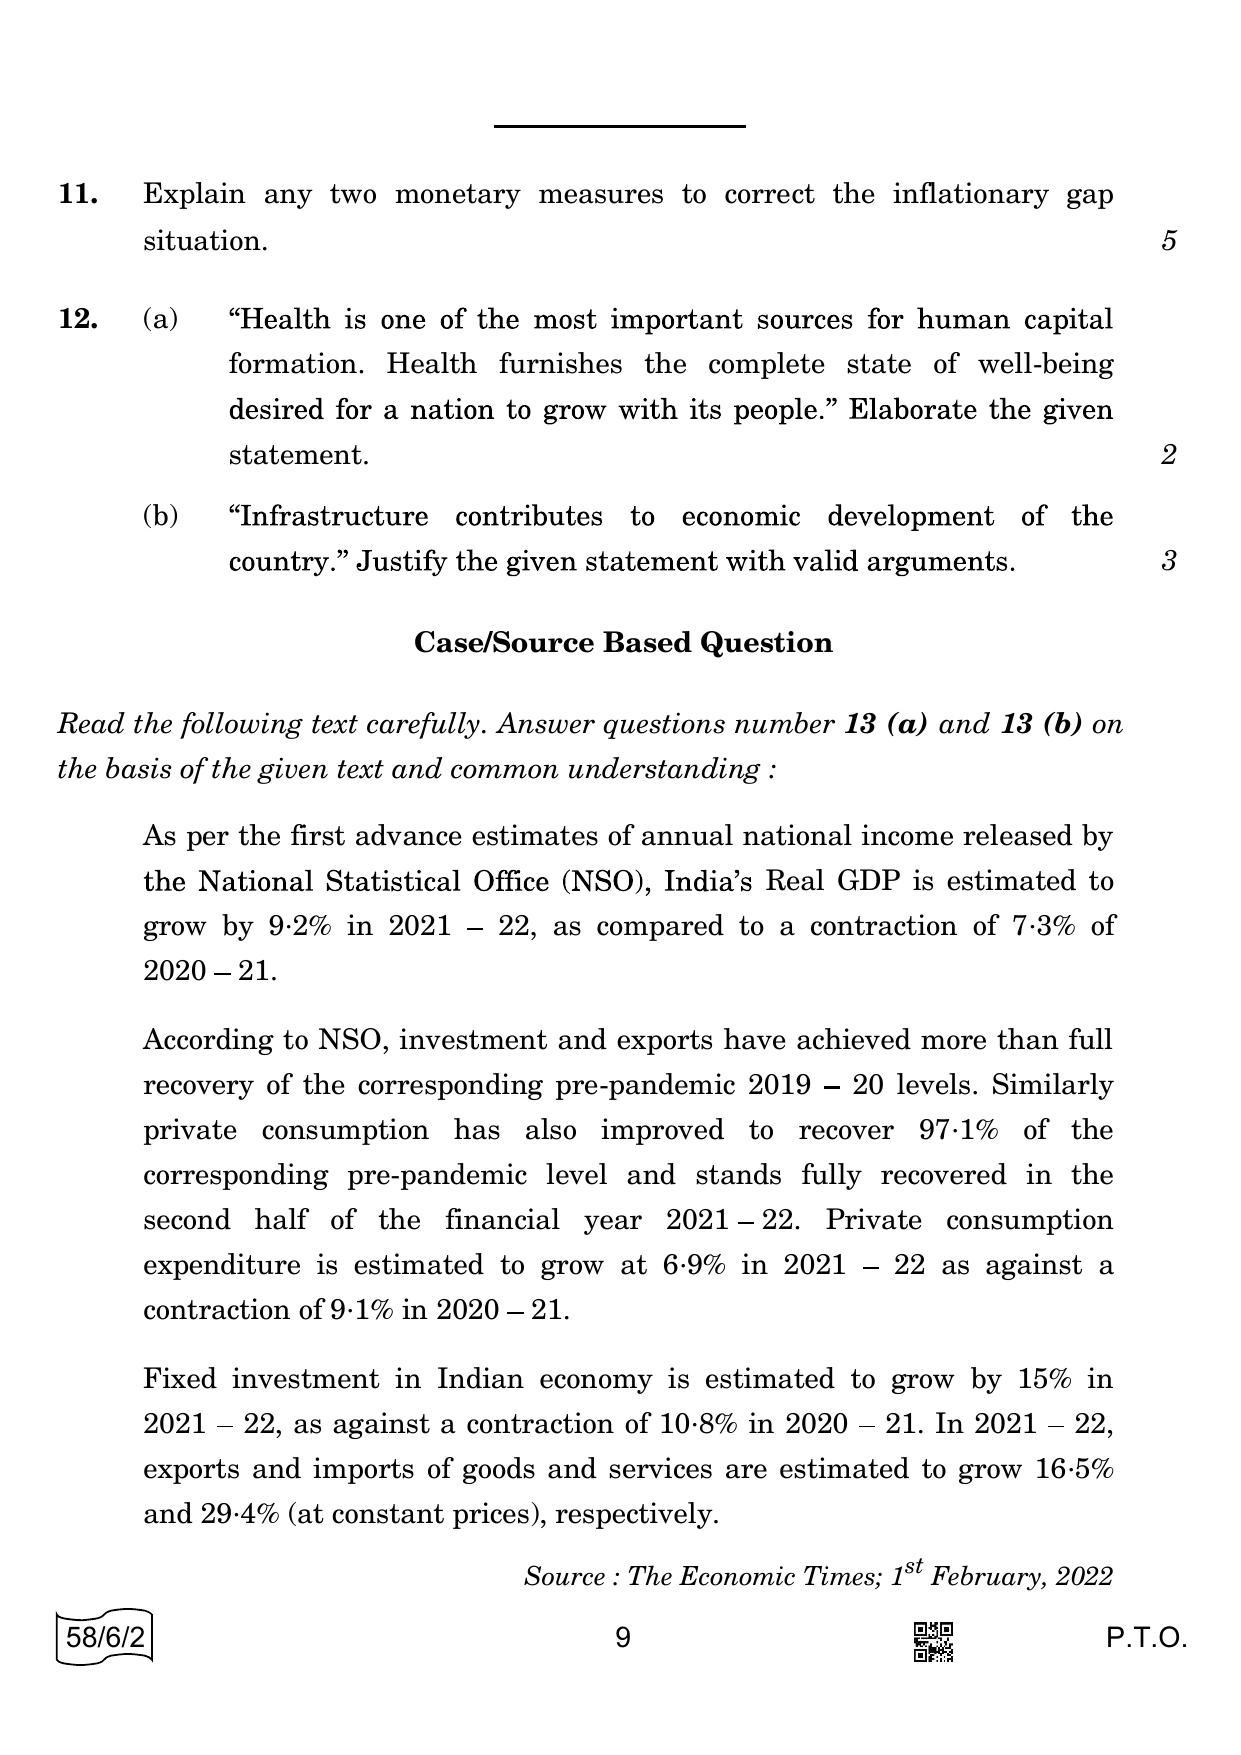 CBSE Class 12 58-6-2 ECONOMICS 2022 Compartment Question Paper - Page 9